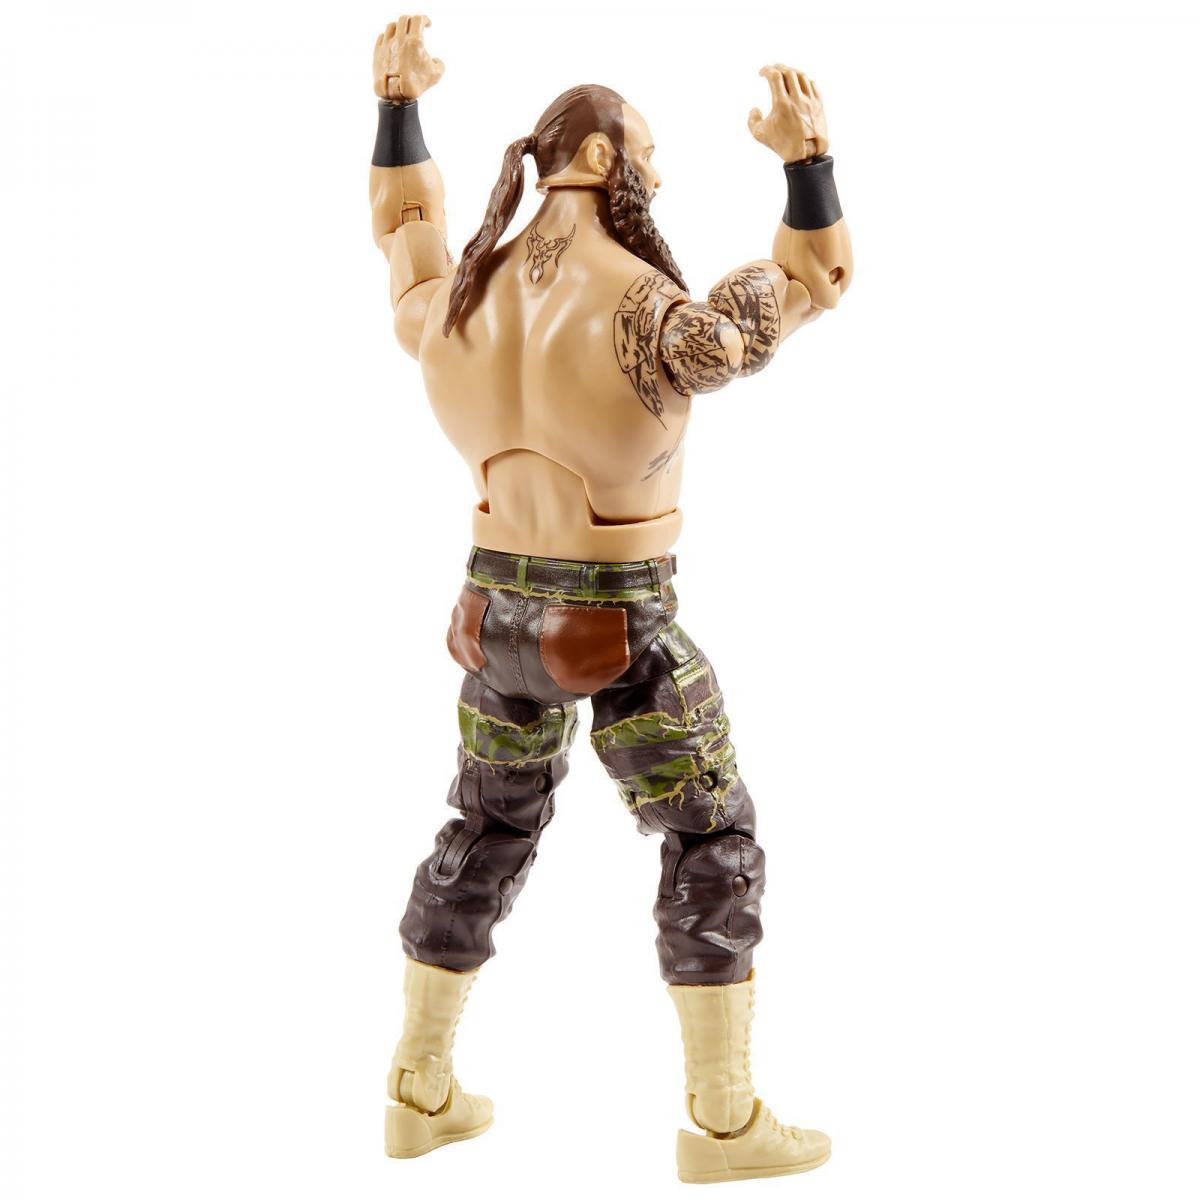 2020 WWE Mattel Elite Collection Top Picks Braun Strowman